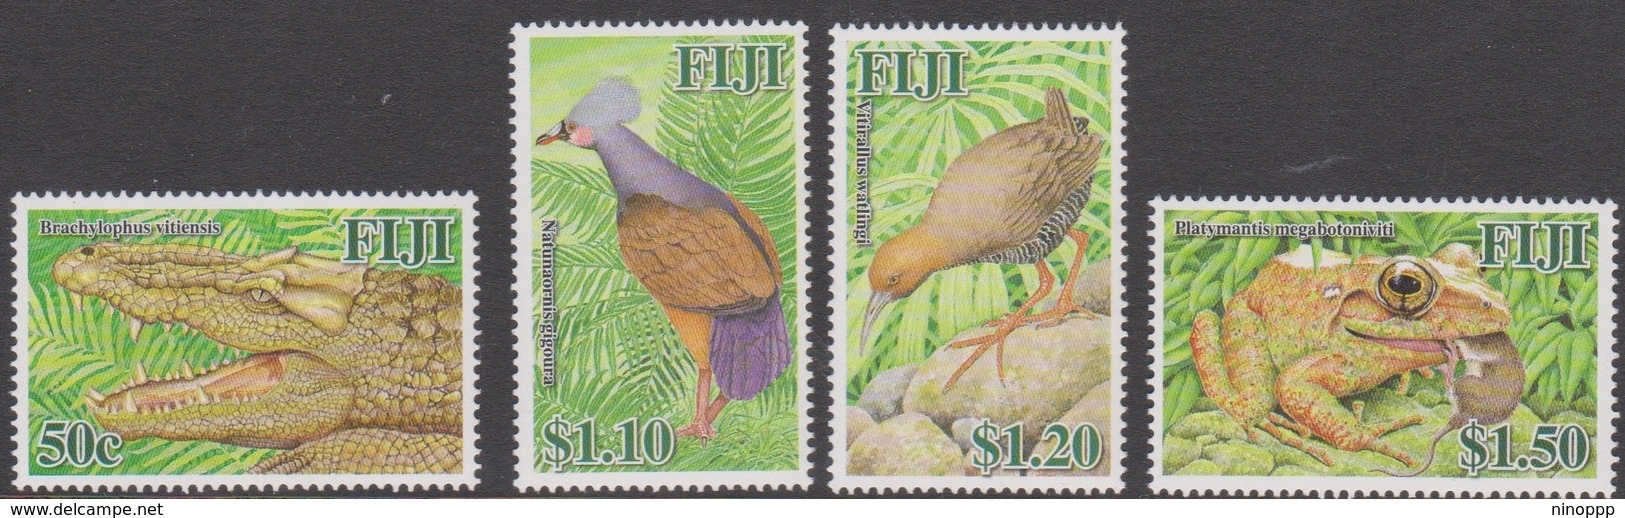 Fiji SG 1326-1329 2006 Extint Megafauna, Mint Never Hinged - Fiji (1970-...)